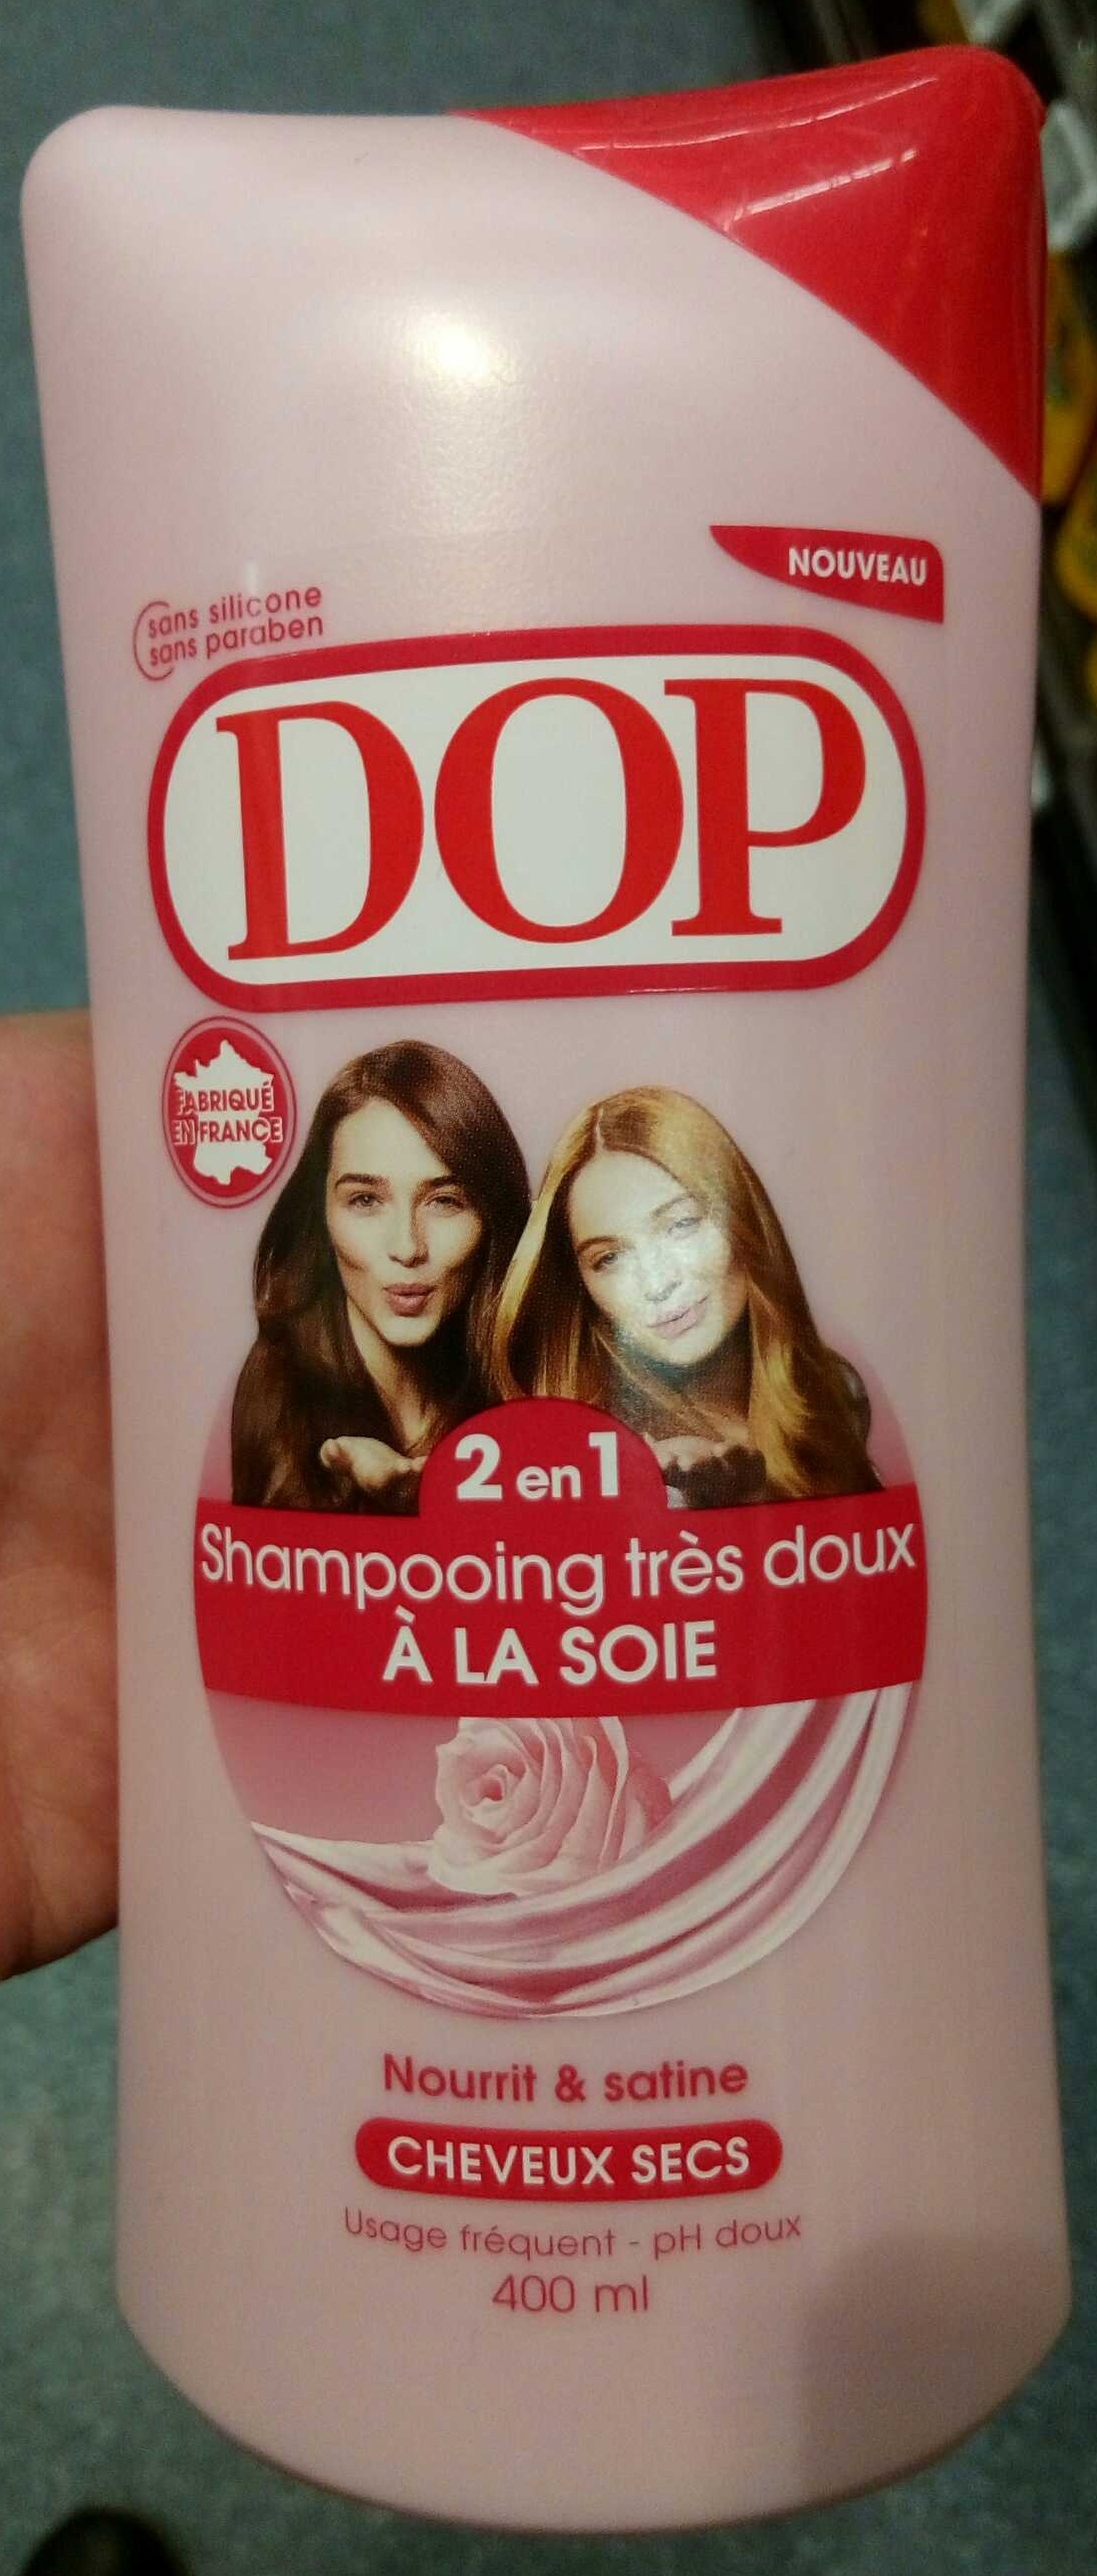 Shampooing très doux 2 en 1 à la soie - Product - fr